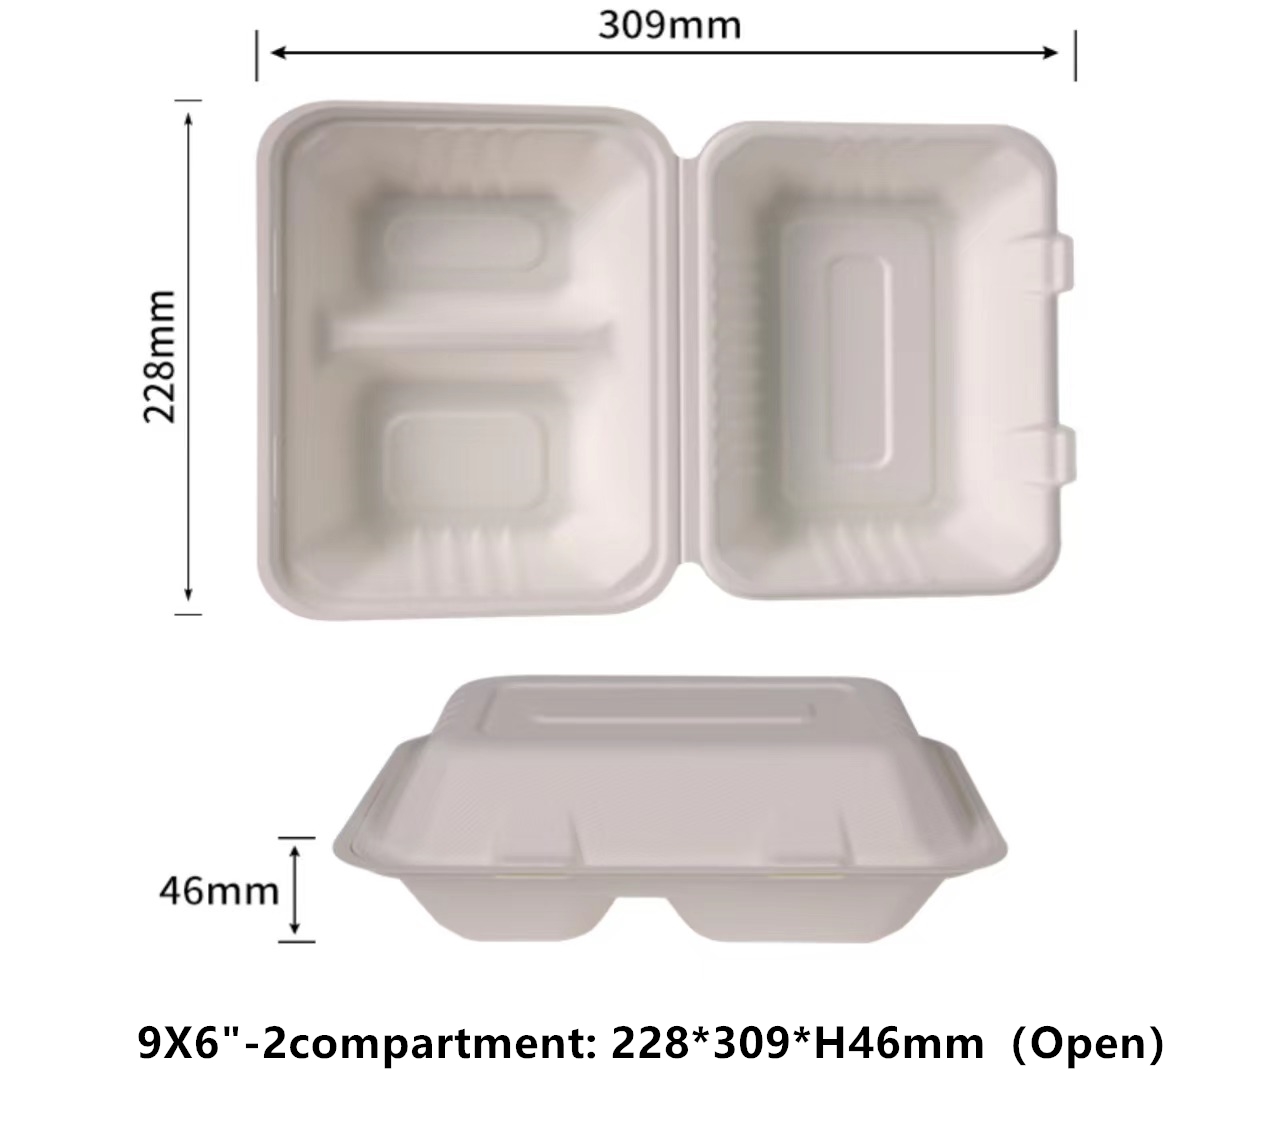 翻盖式 9X6 英寸 2 隔间外卖食品容器 100% 可堆肥一次性外带容器 重型外带盒 环保可生物降解外带食品容器